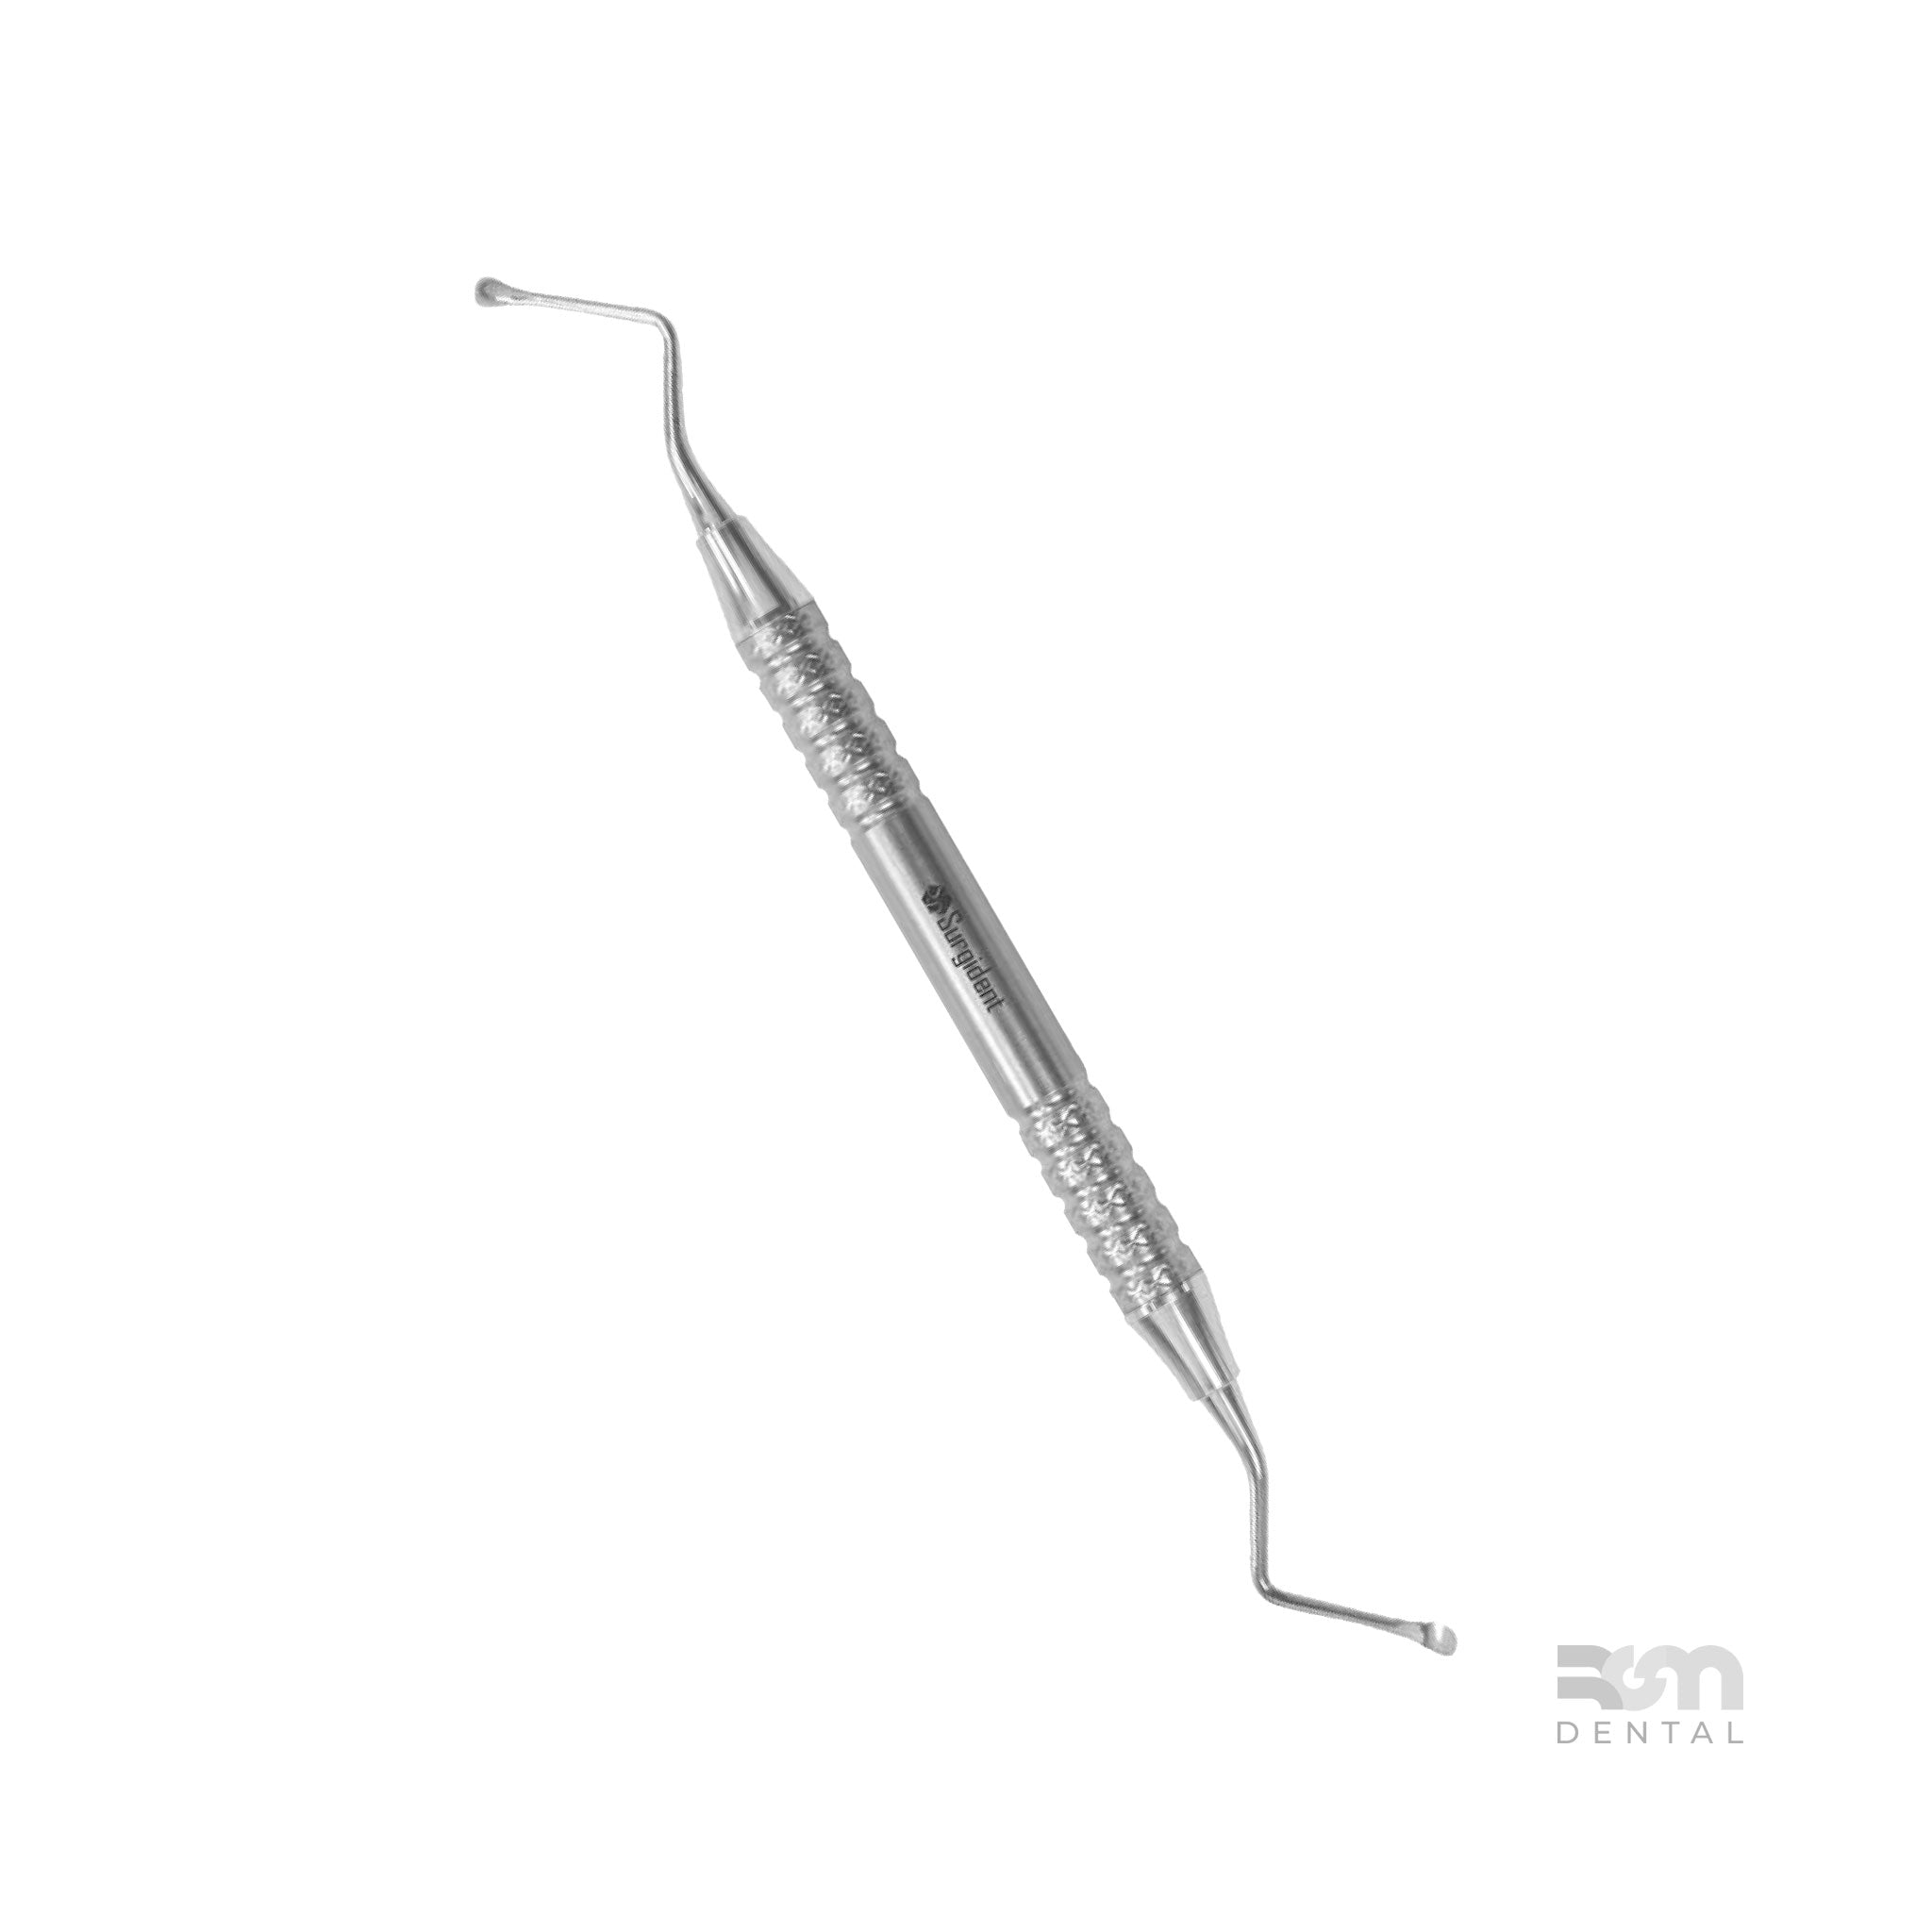 Surgical Curette CL86 : 3.0mm